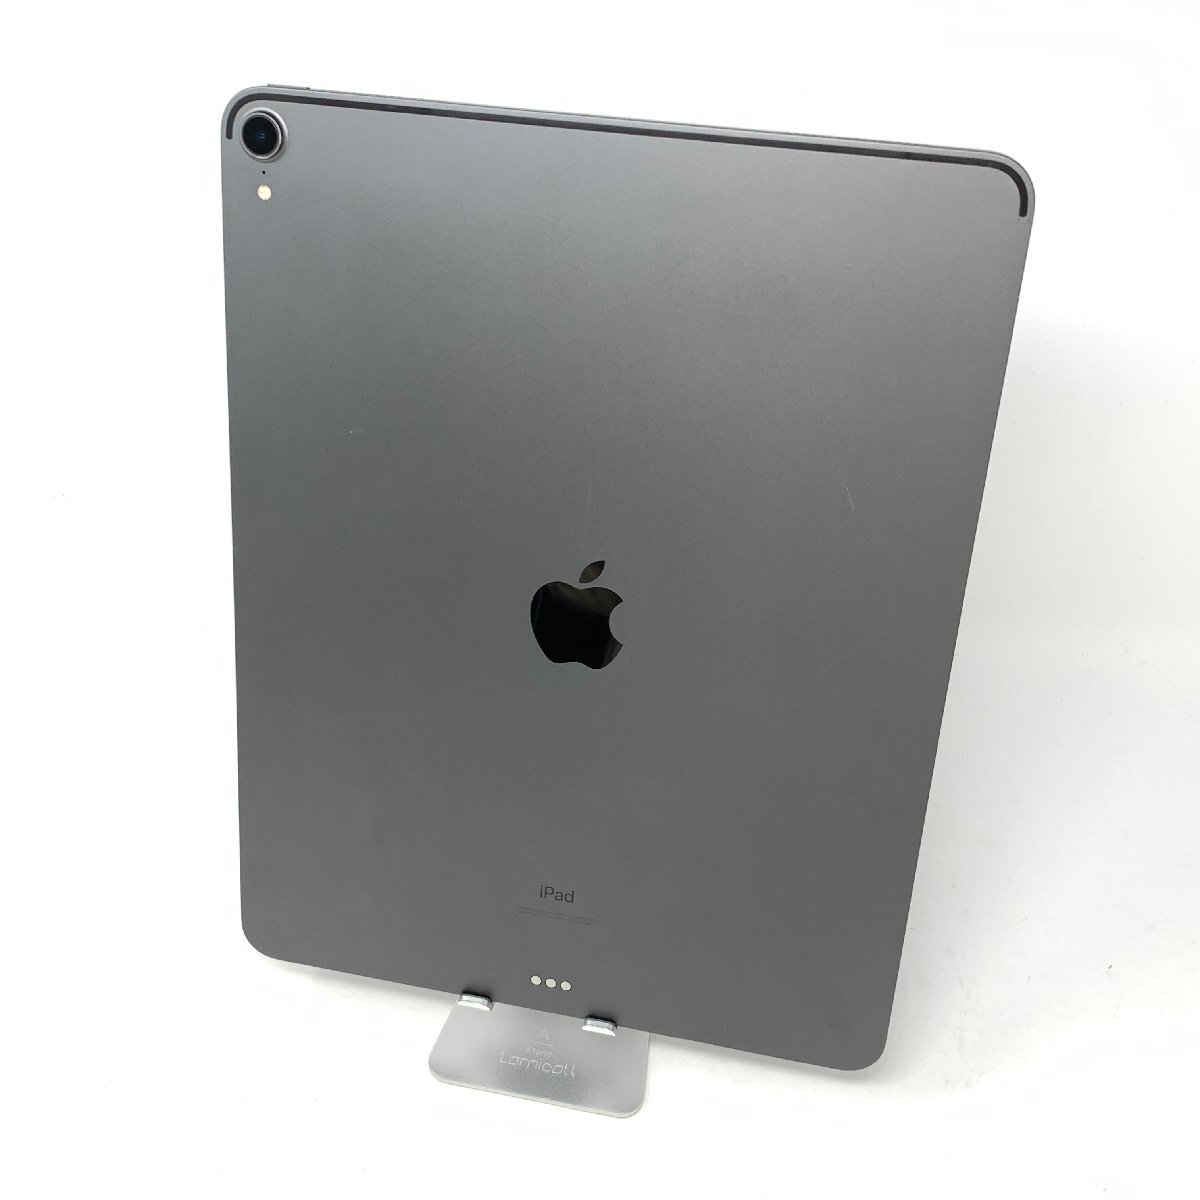 [ б/у ]iPad Pro 12.9 дюймовый ( no. 3 поколение )/Wi-Fi/64GB/ Space серый /98%/DLXXL6VLK7M9